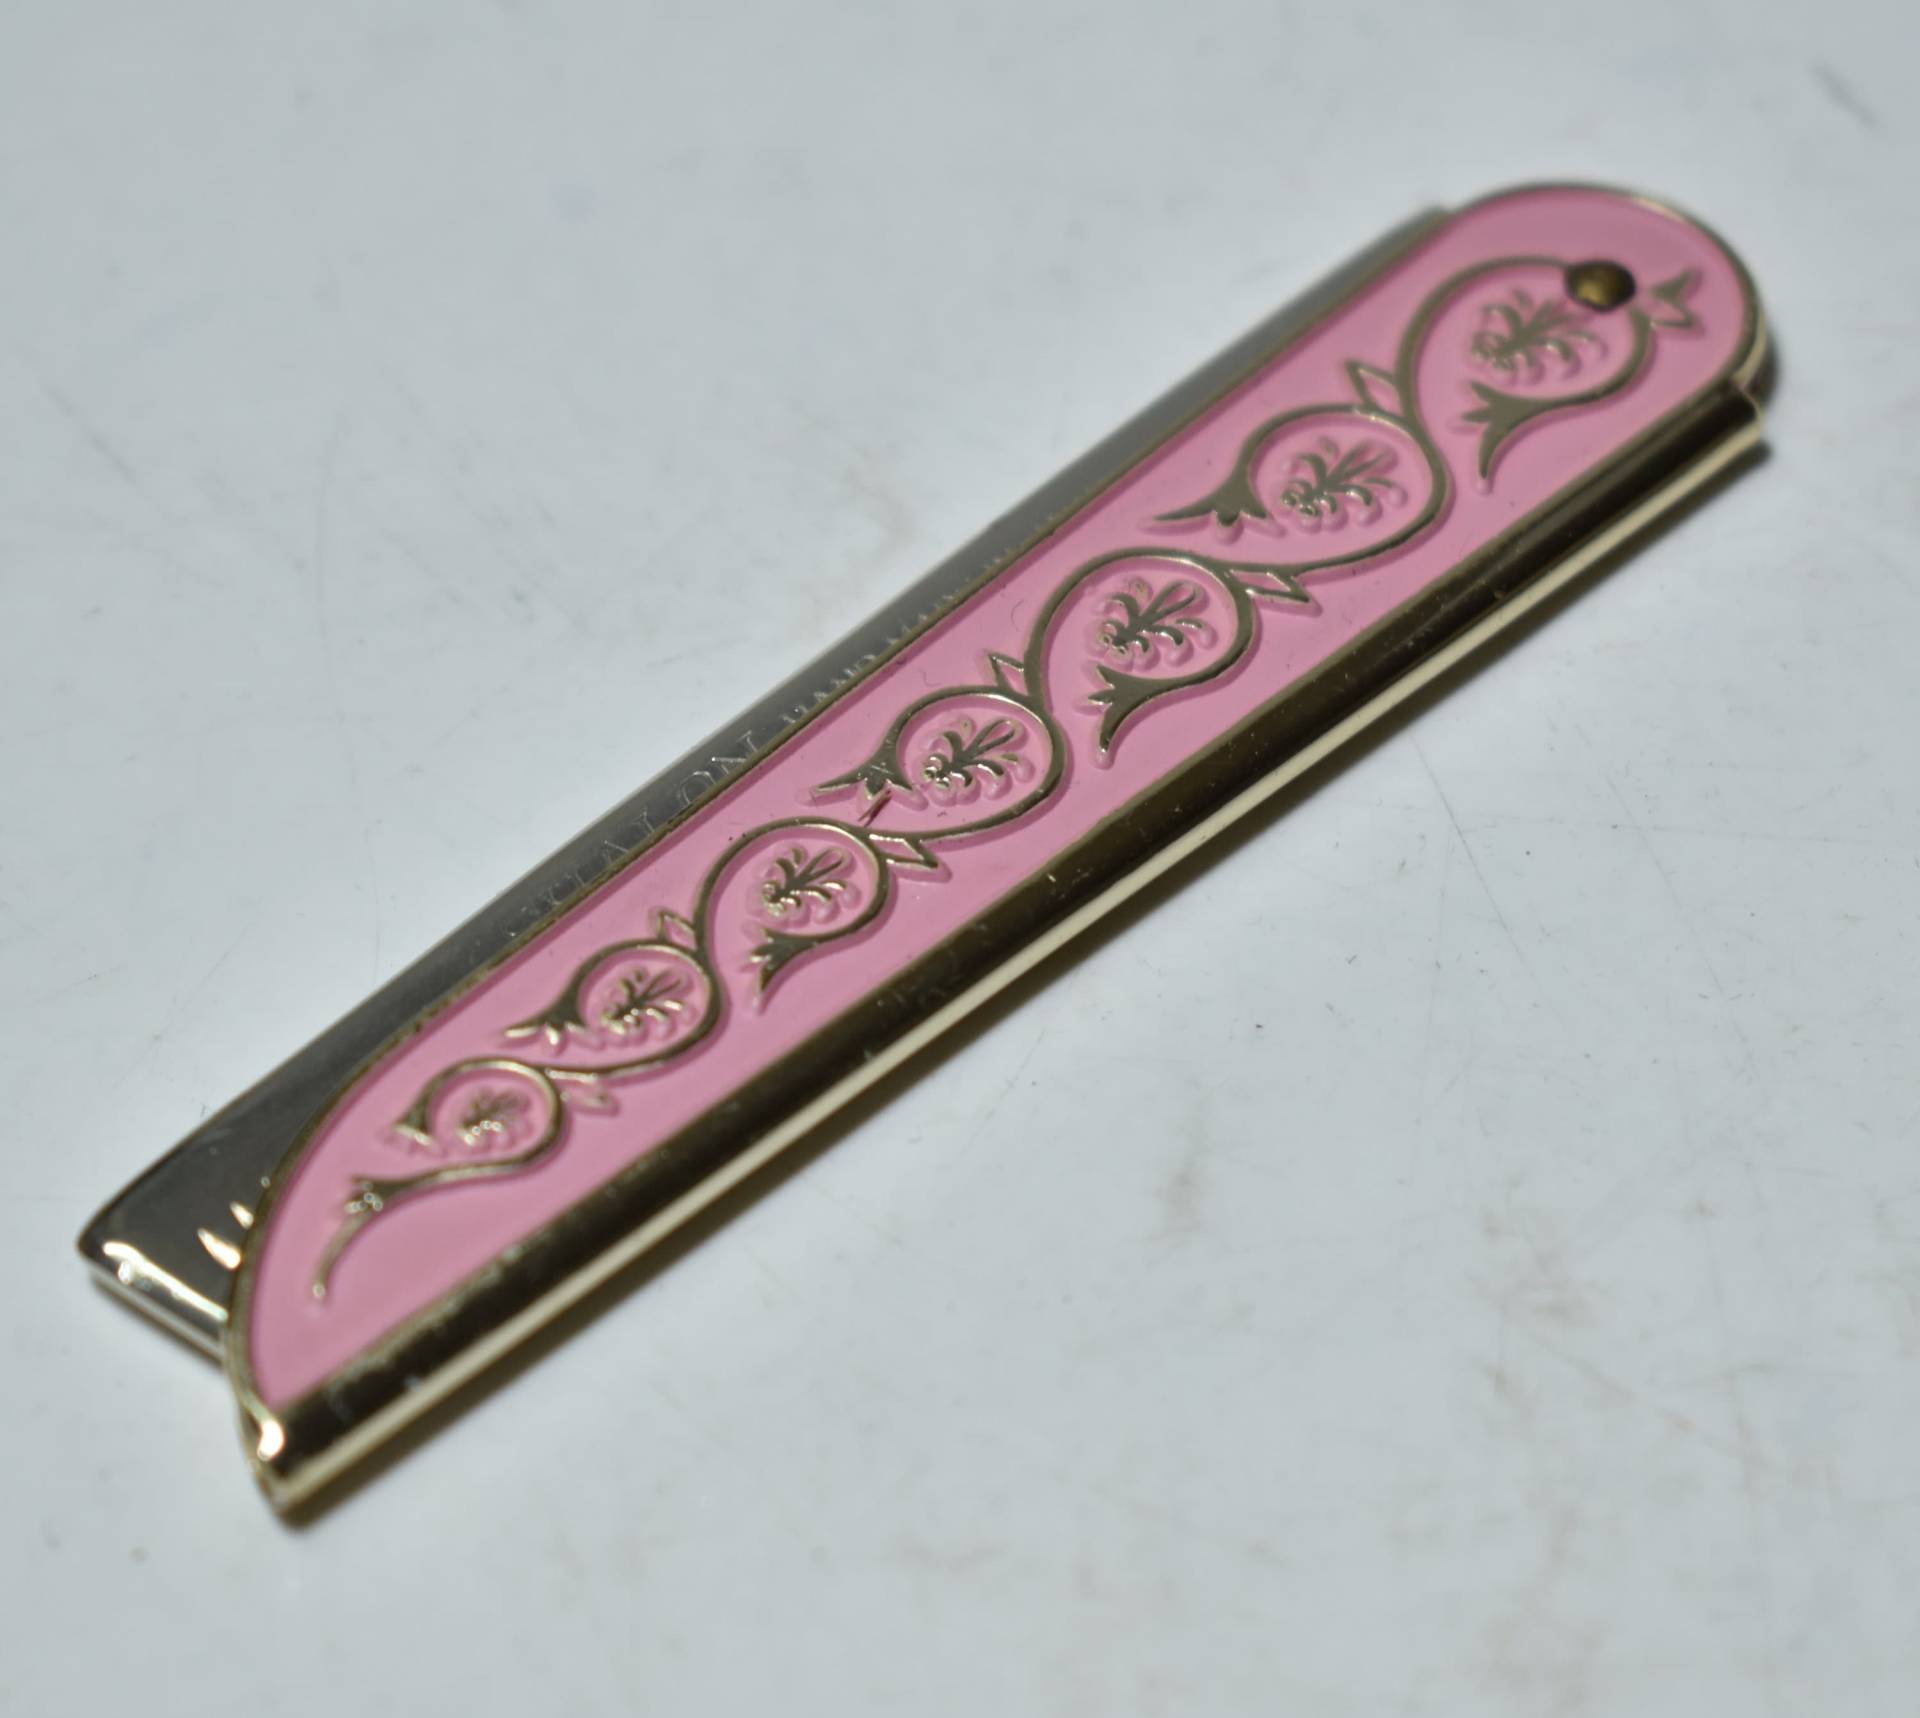 Vintage Sammlerstück Handarbeit Kamm Shalon Made in Japan-Pink Mit Schönem Design von AntiquesGiftsArt